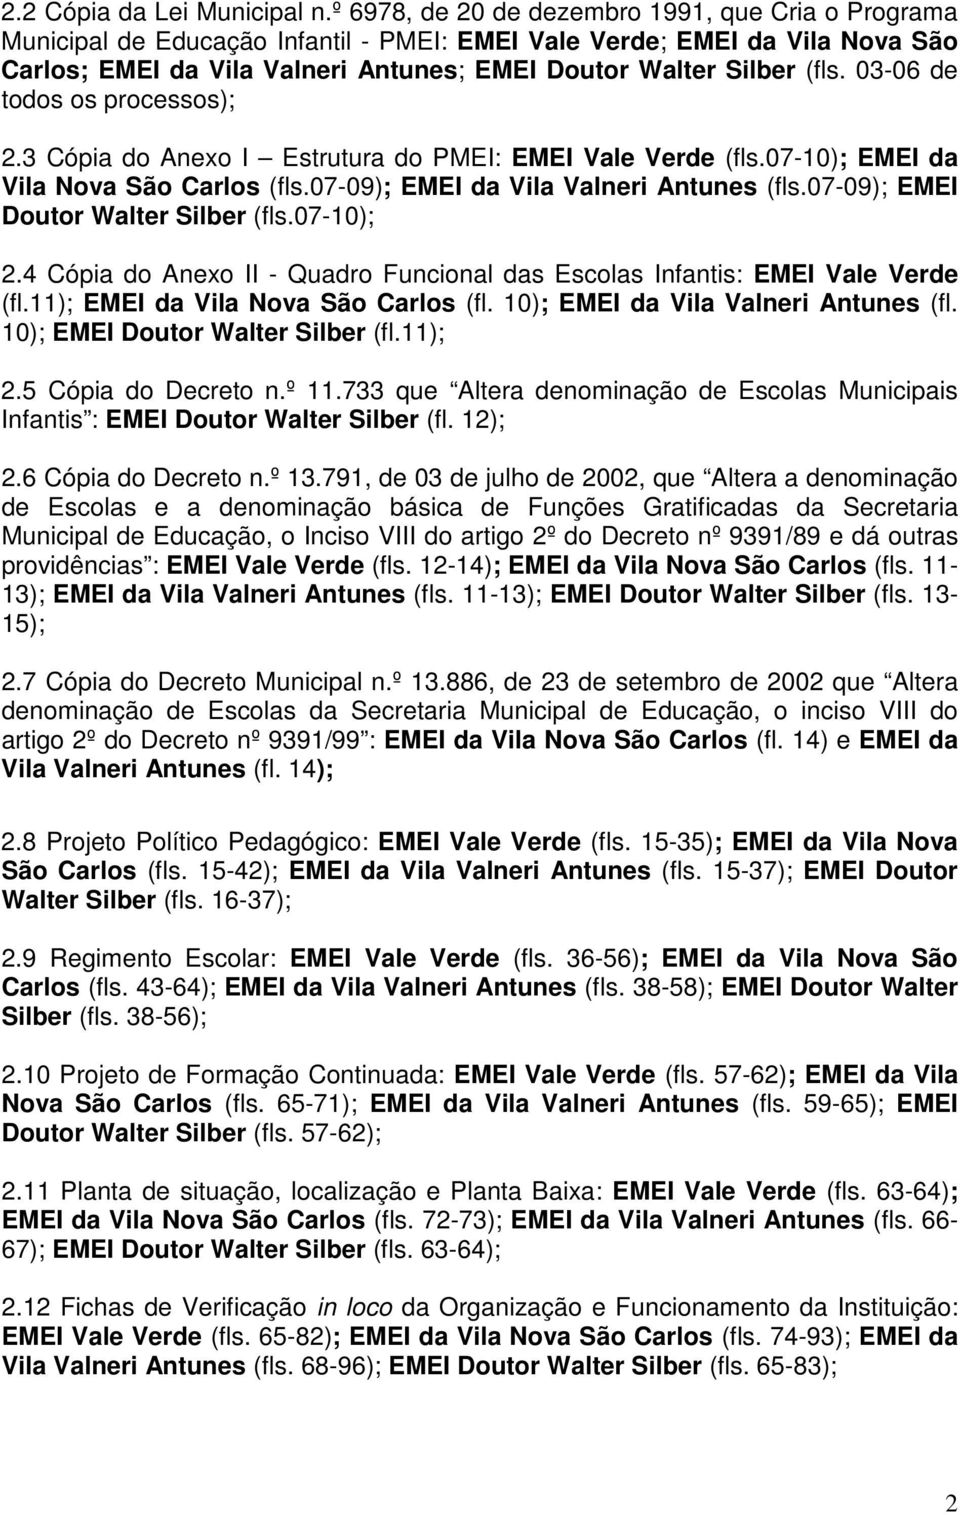 03-06 de todos os processos); 2.3 Cópia do Anexo I Estrutura do PMEI: EMEI Vale Verde (fls.07-10); EMEI da Vila Nova São Carlos (fls.07-09); EMEI da Vila Valneri Antunes (fls.